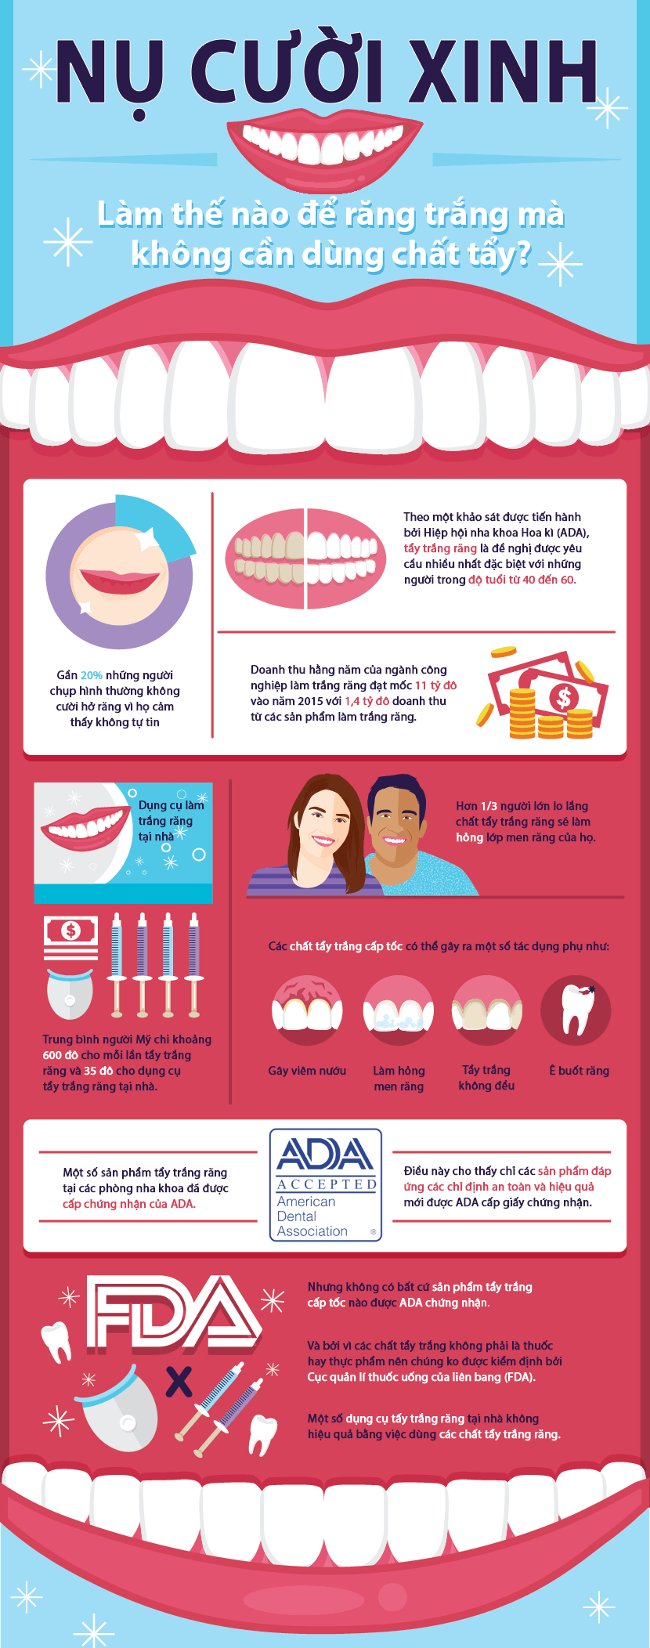 Những cách làm trắng răng an toàn và hiệu quả